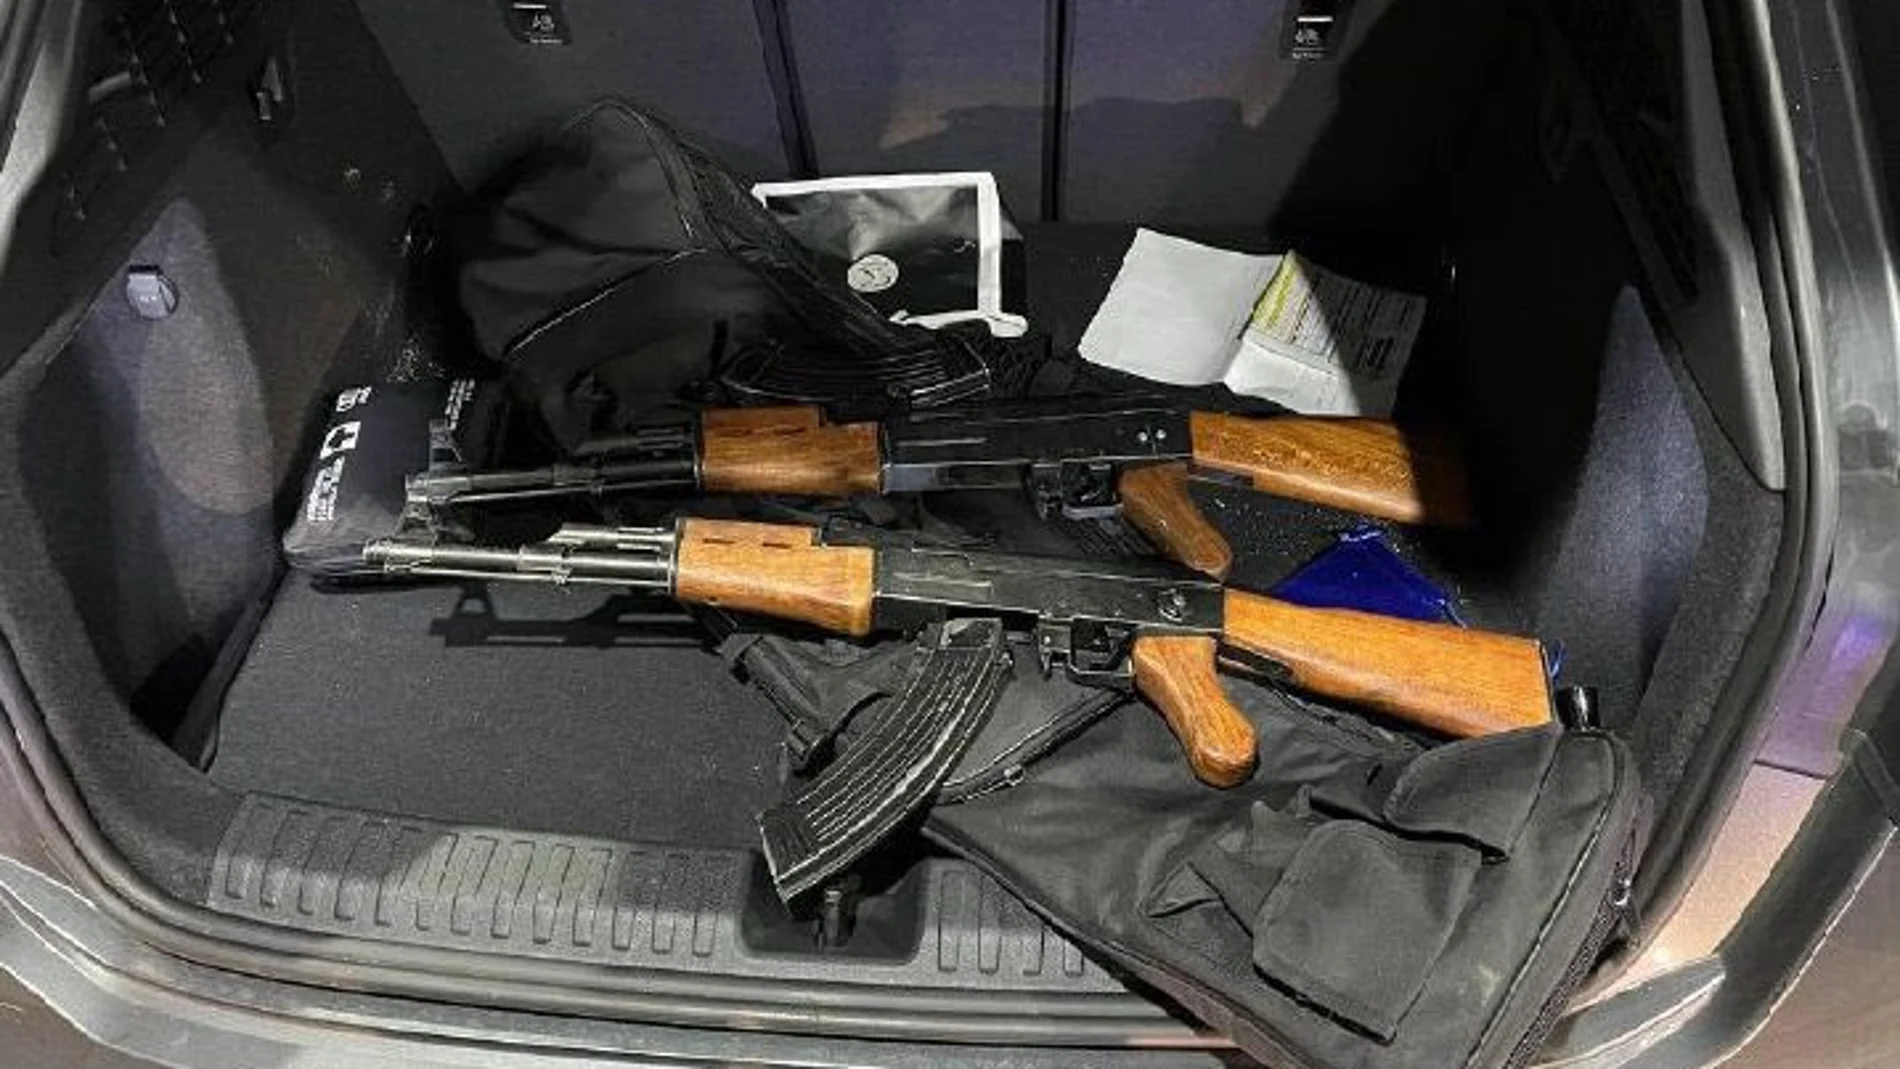 Interceptan dos AK-47 en Girona en un coche con matrícula francesa